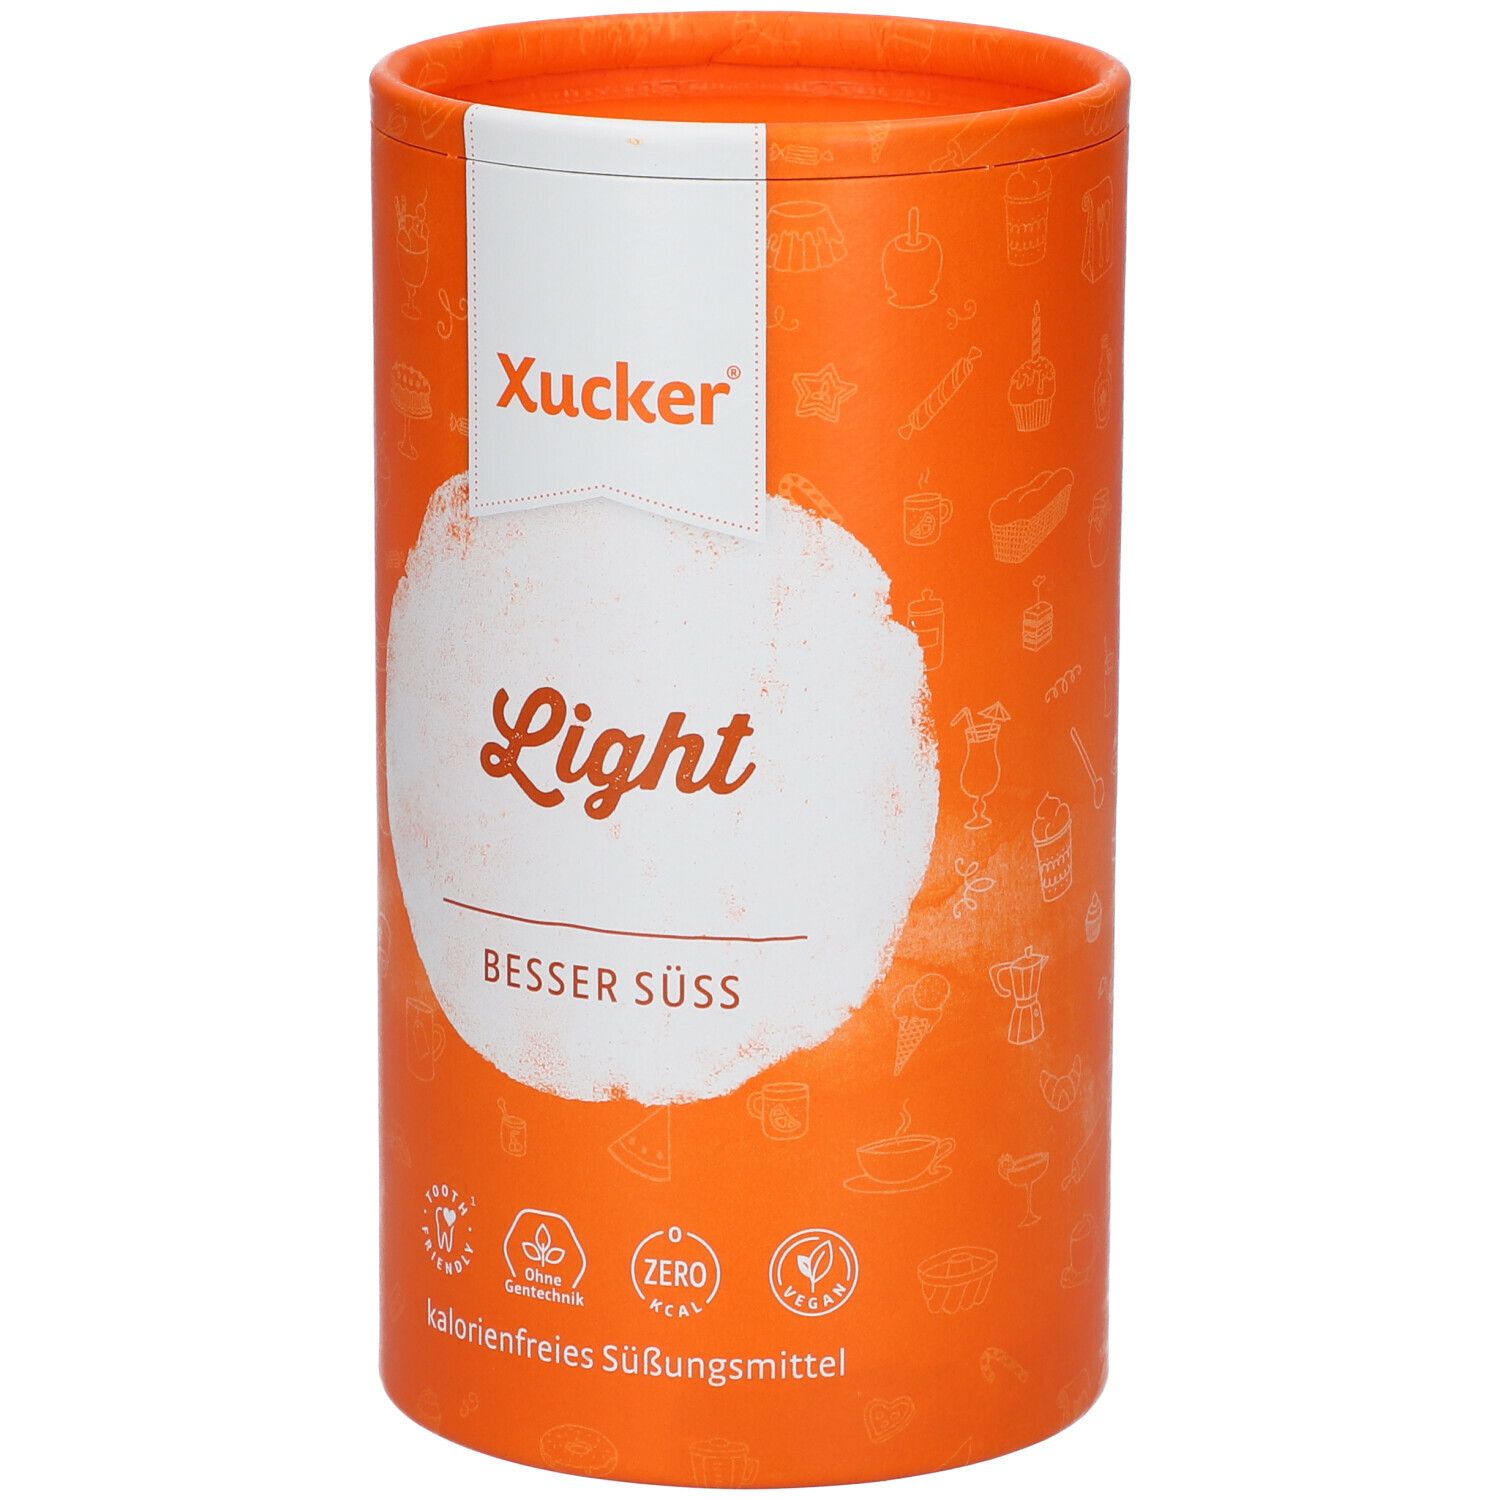 Xucker® Light